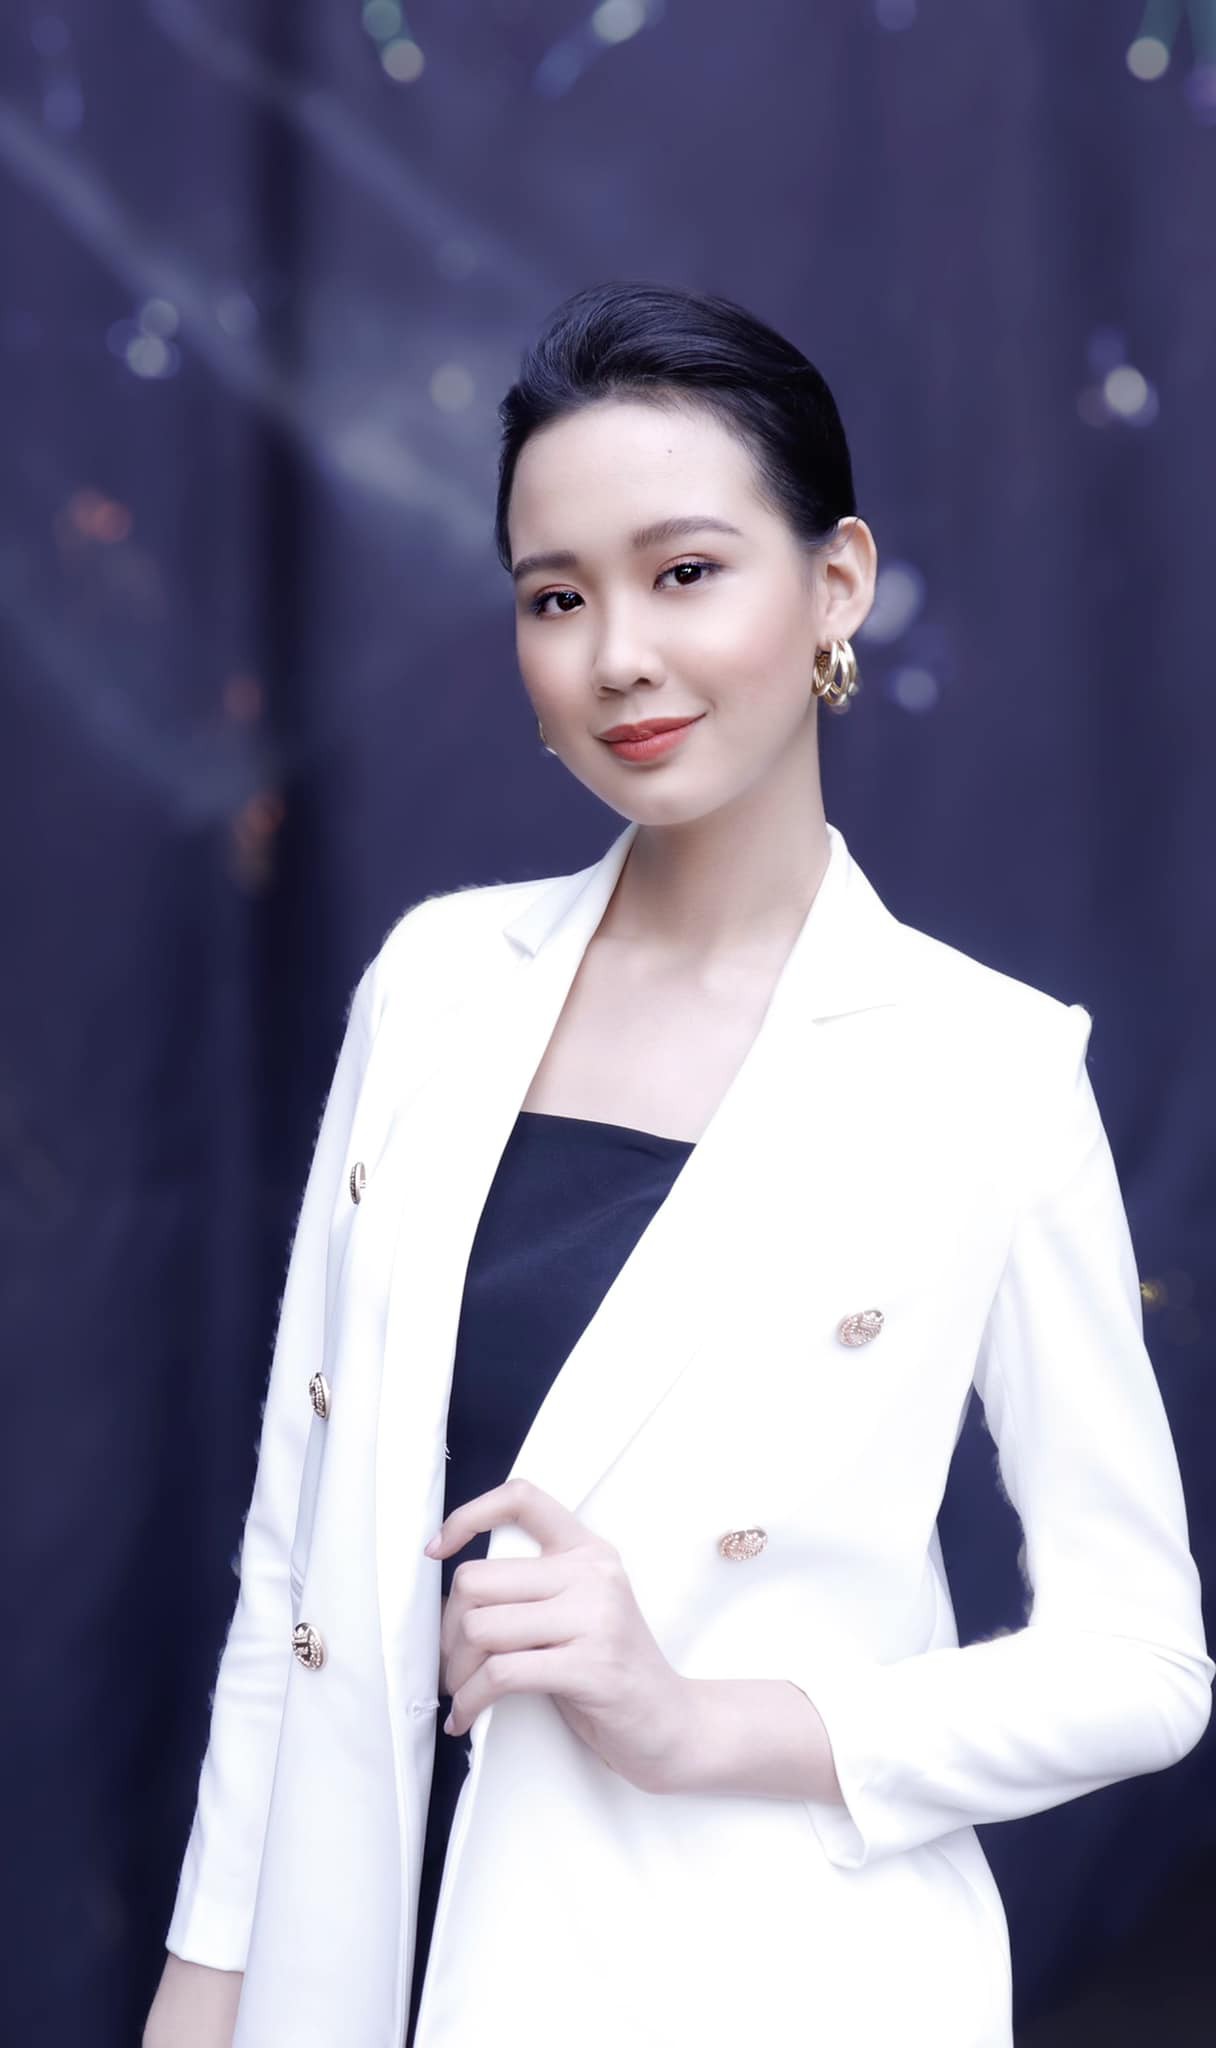 Nhan sắc thí sinh có vòng 3 khủng nhất Hoa hậu Việt Nam 2020 - Hình 8